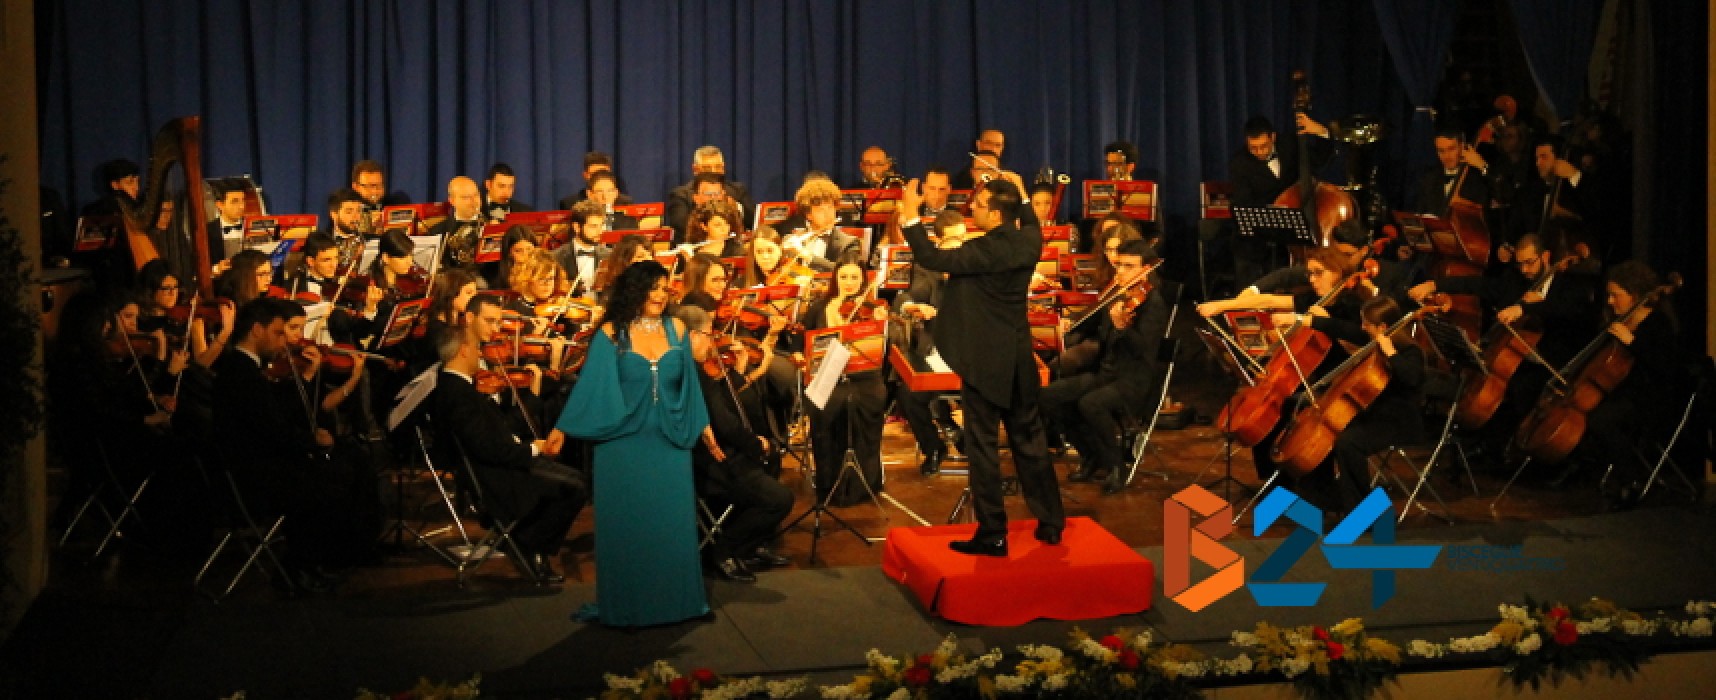 L’orchestra “Biagio Abbate” convince il pubblico del Politeama. E stasera si replica / FOTO